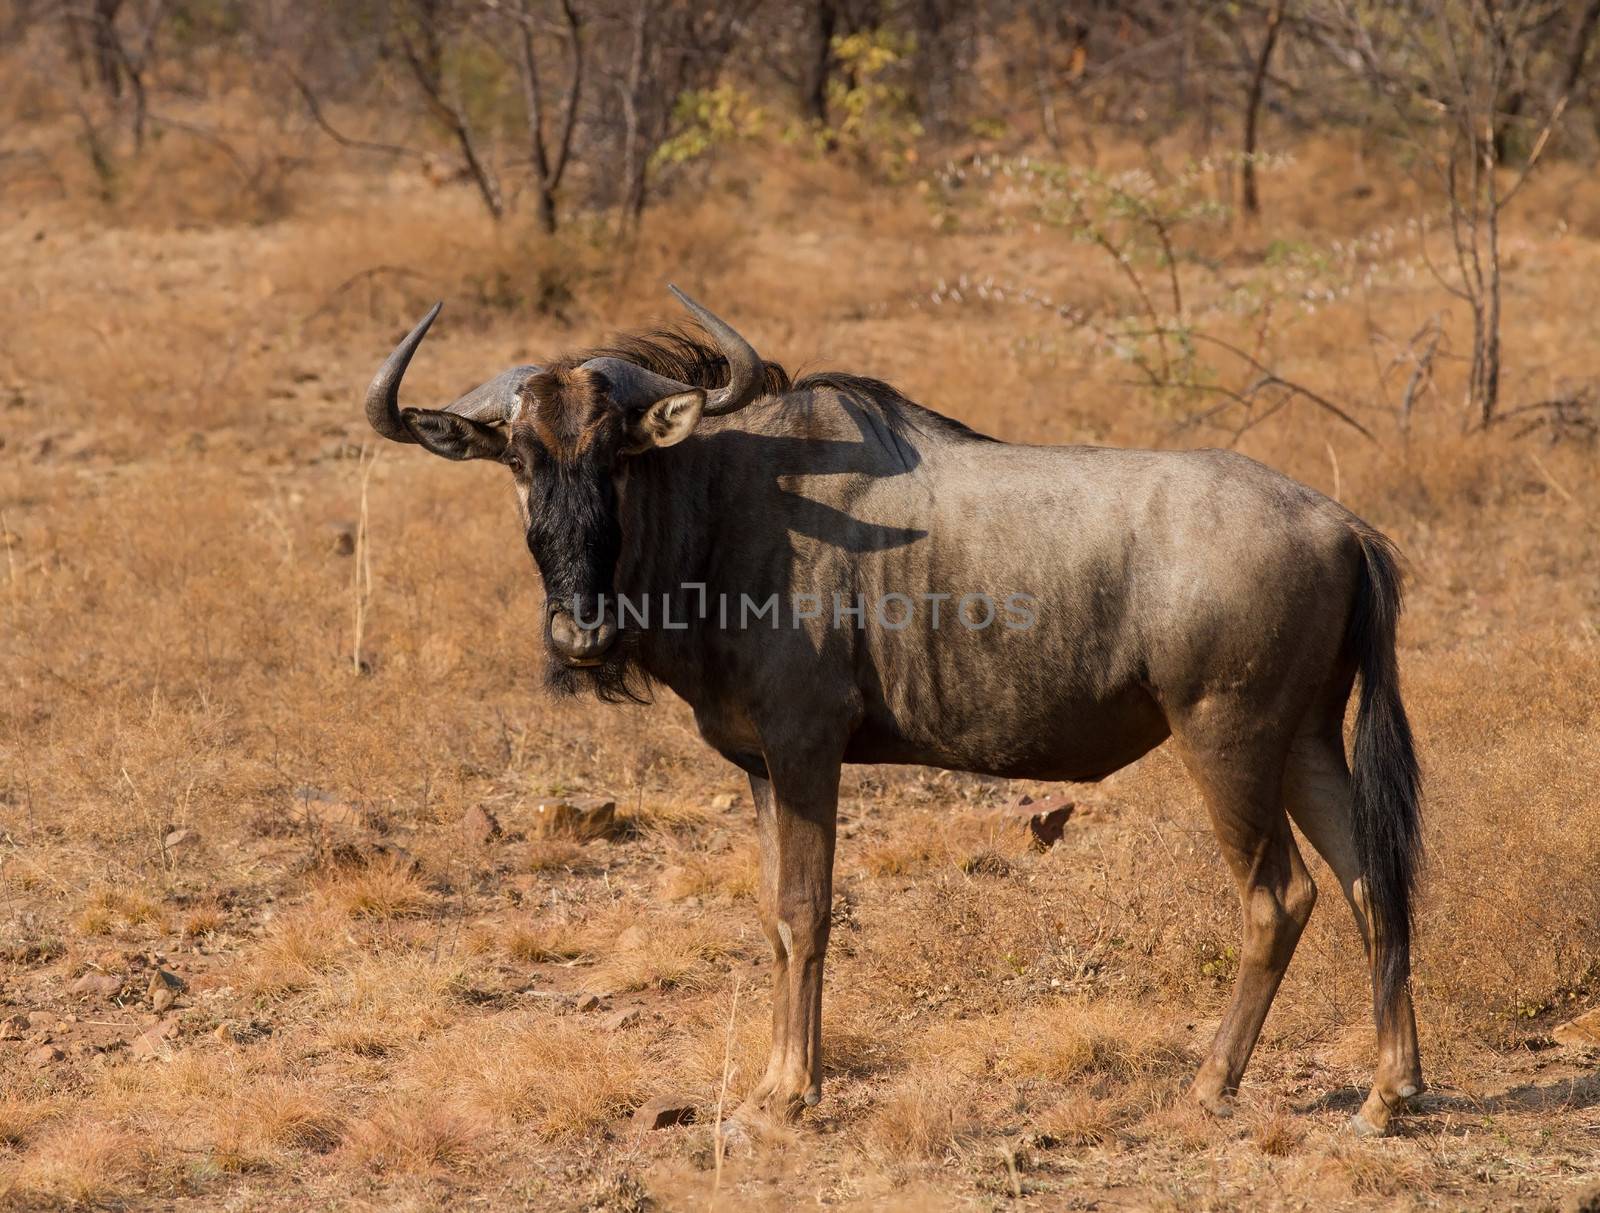 Wildebeest portrait by nightowlza